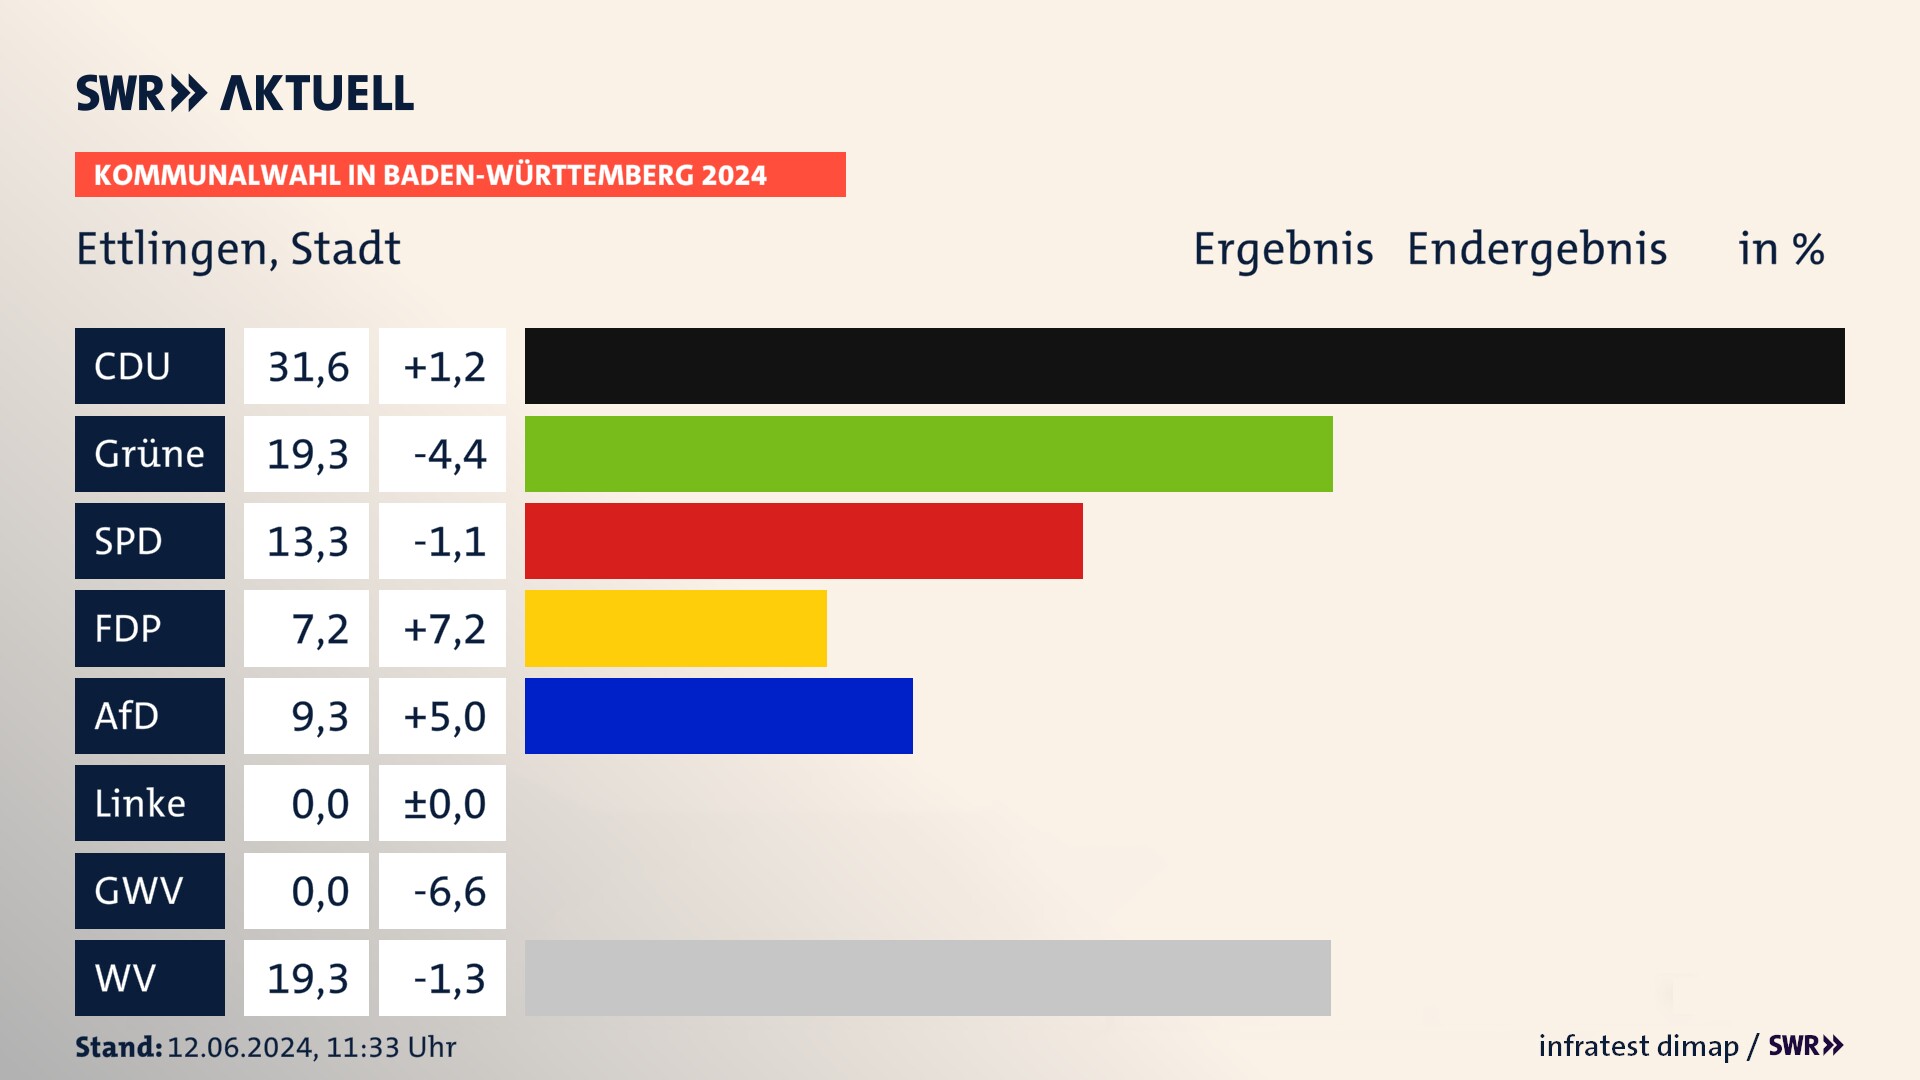 Kommunalwahl 2024 Endergebnis Zweitstimme für Ettlingen. In Ettlingen, Stadt erzielt die CDU 31,6 Prozent der gültigen  Stimmen. Die Grünen landen bei 19,3 Prozent. Die SPD erreicht 13,3 Prozent. Die FDP kommt auf 7,2 Prozent. Die AfD landet bei 9,3 Prozent. Die Wählervereinigungen erreichen 19,3 Prozent.